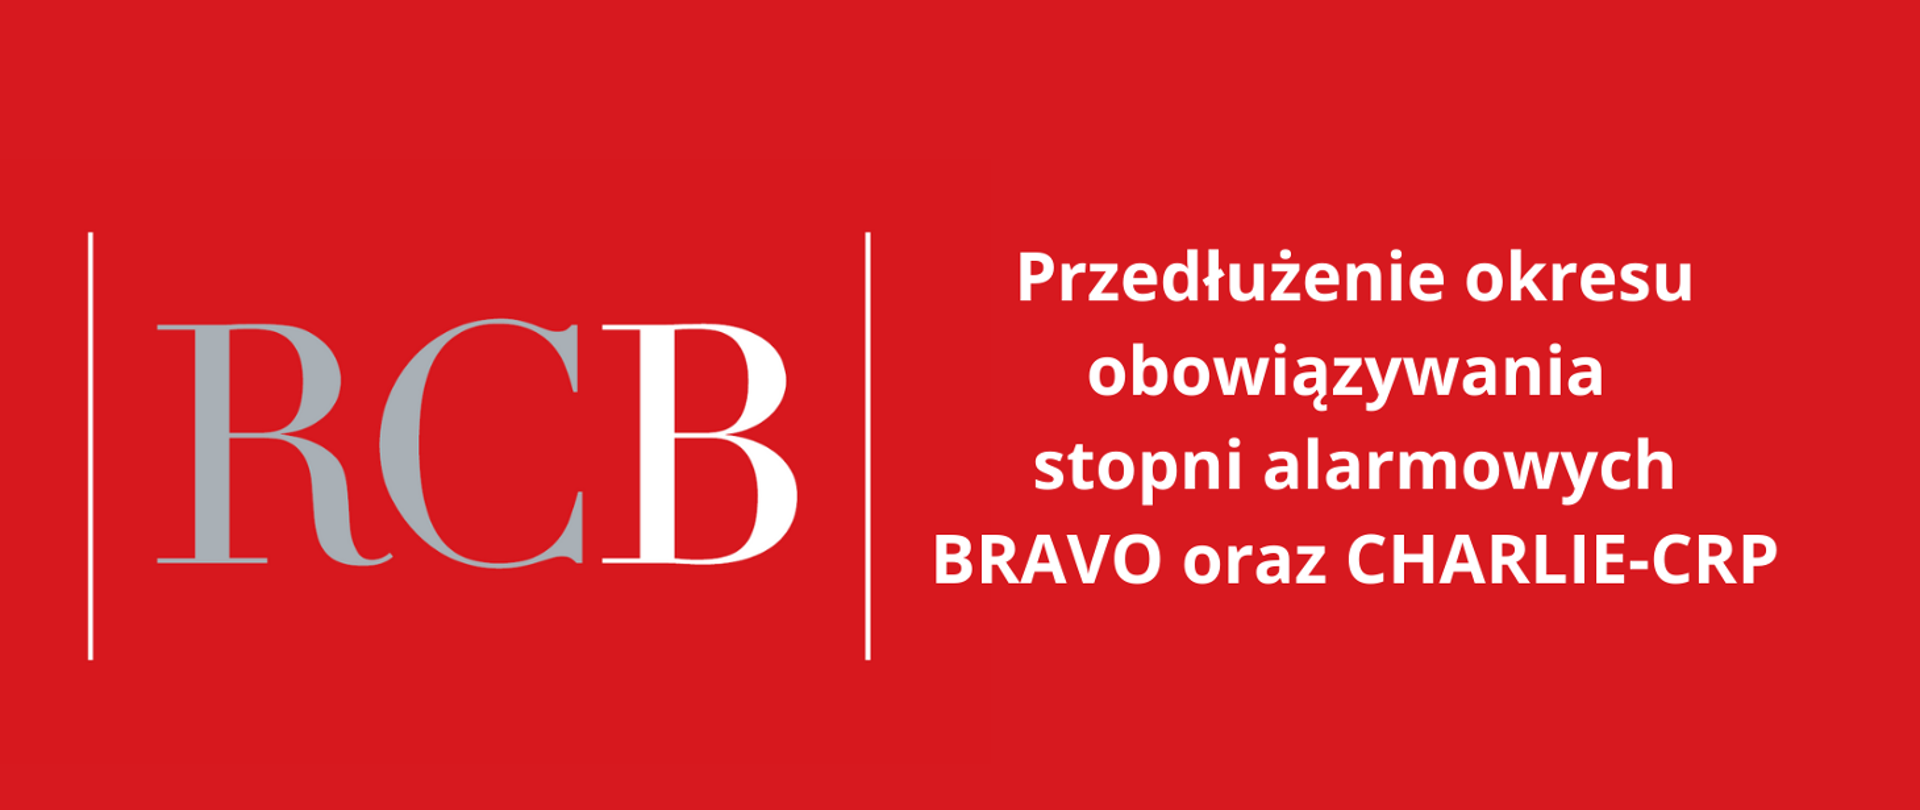 Przedłużenie obowiązywania stopni alarmowych BRAVO oraz CHARLIE-CRP – do 30 listopada 2022r.